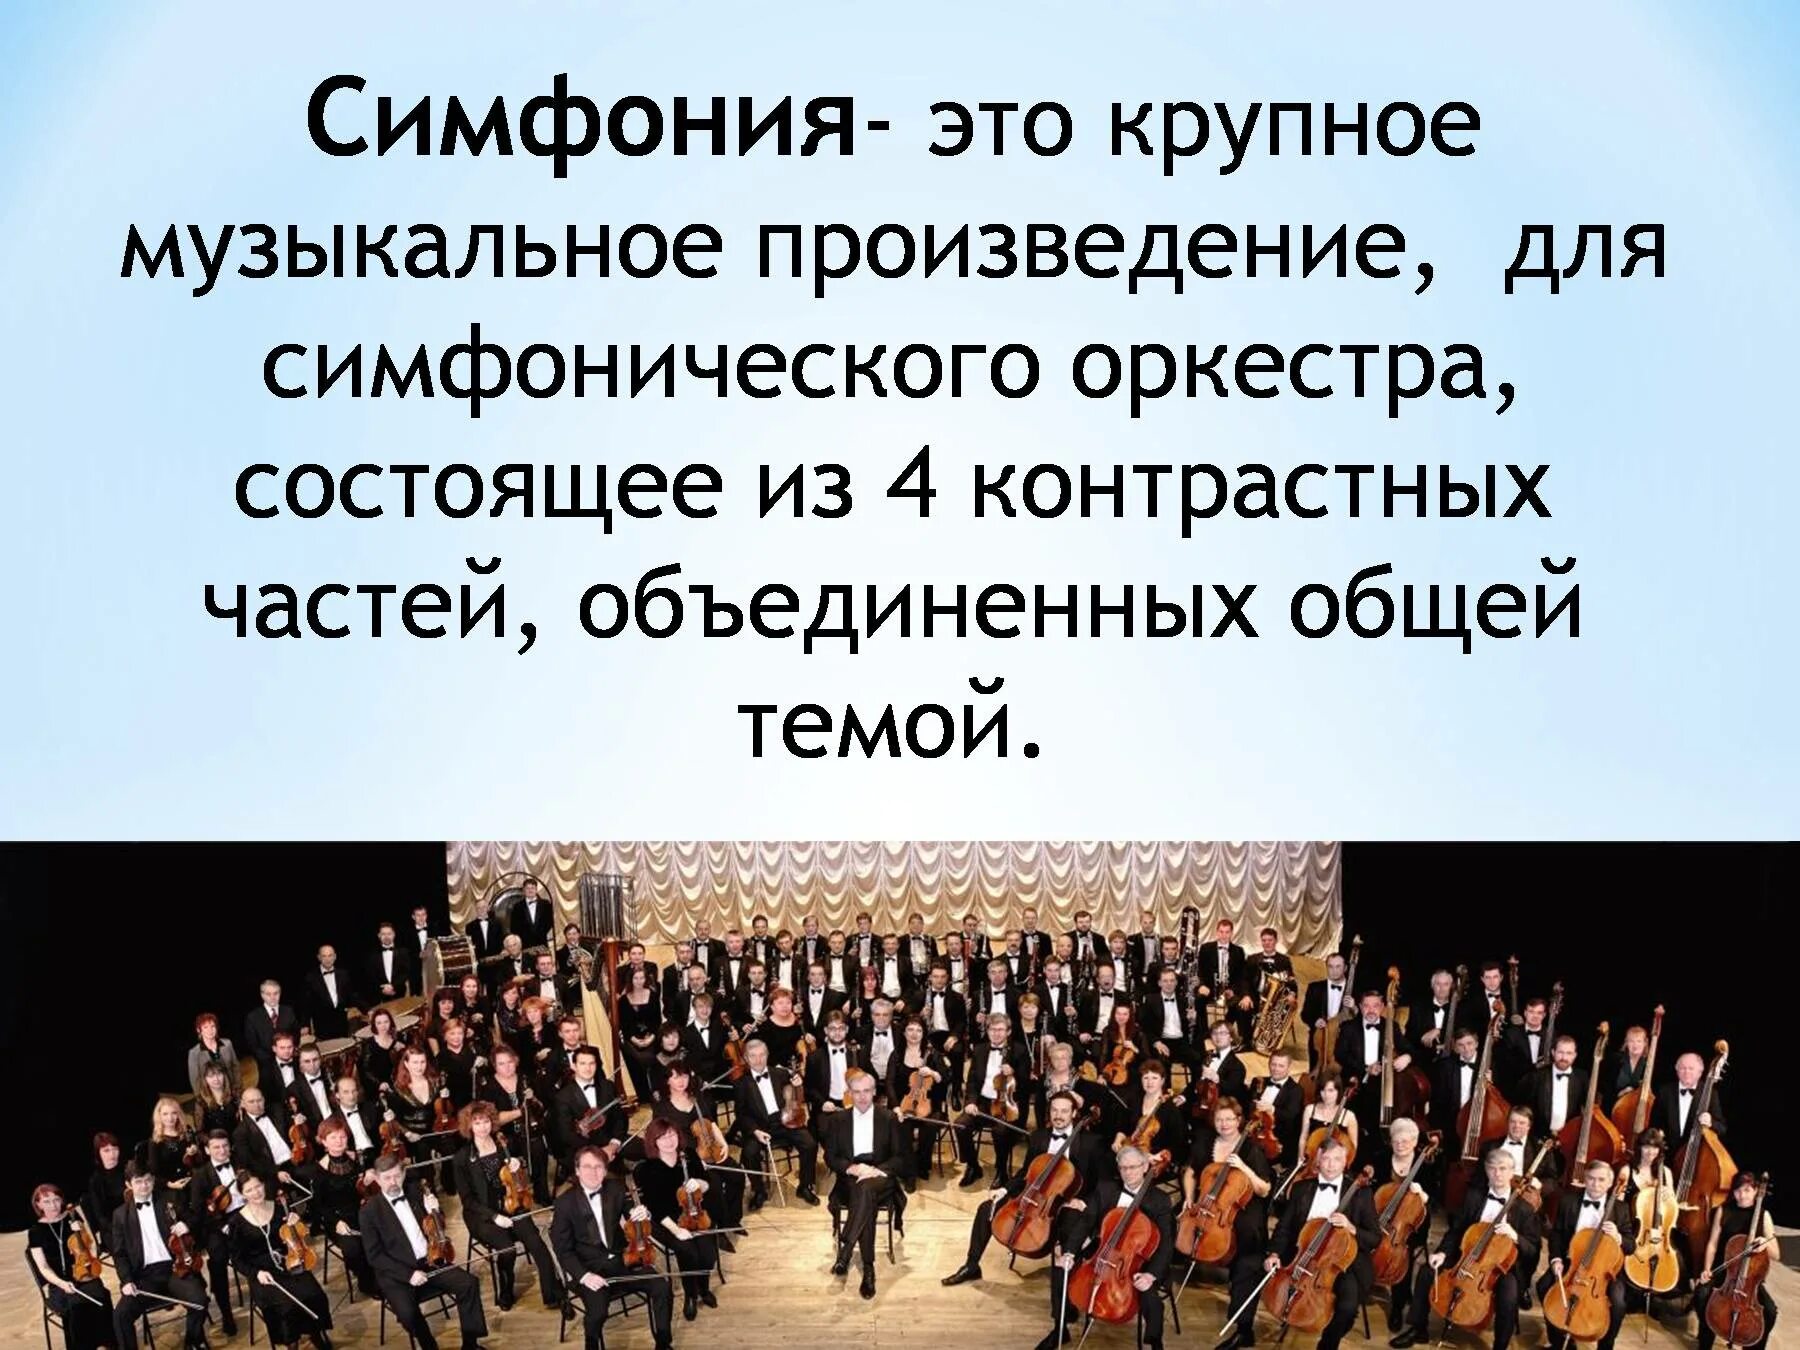 Вокально симфонические произведения. Симфония. Произведения для симфонического оркестра. Симфония-это музыкальное произведение. Музыкальное произведение для симфонического оркестра.